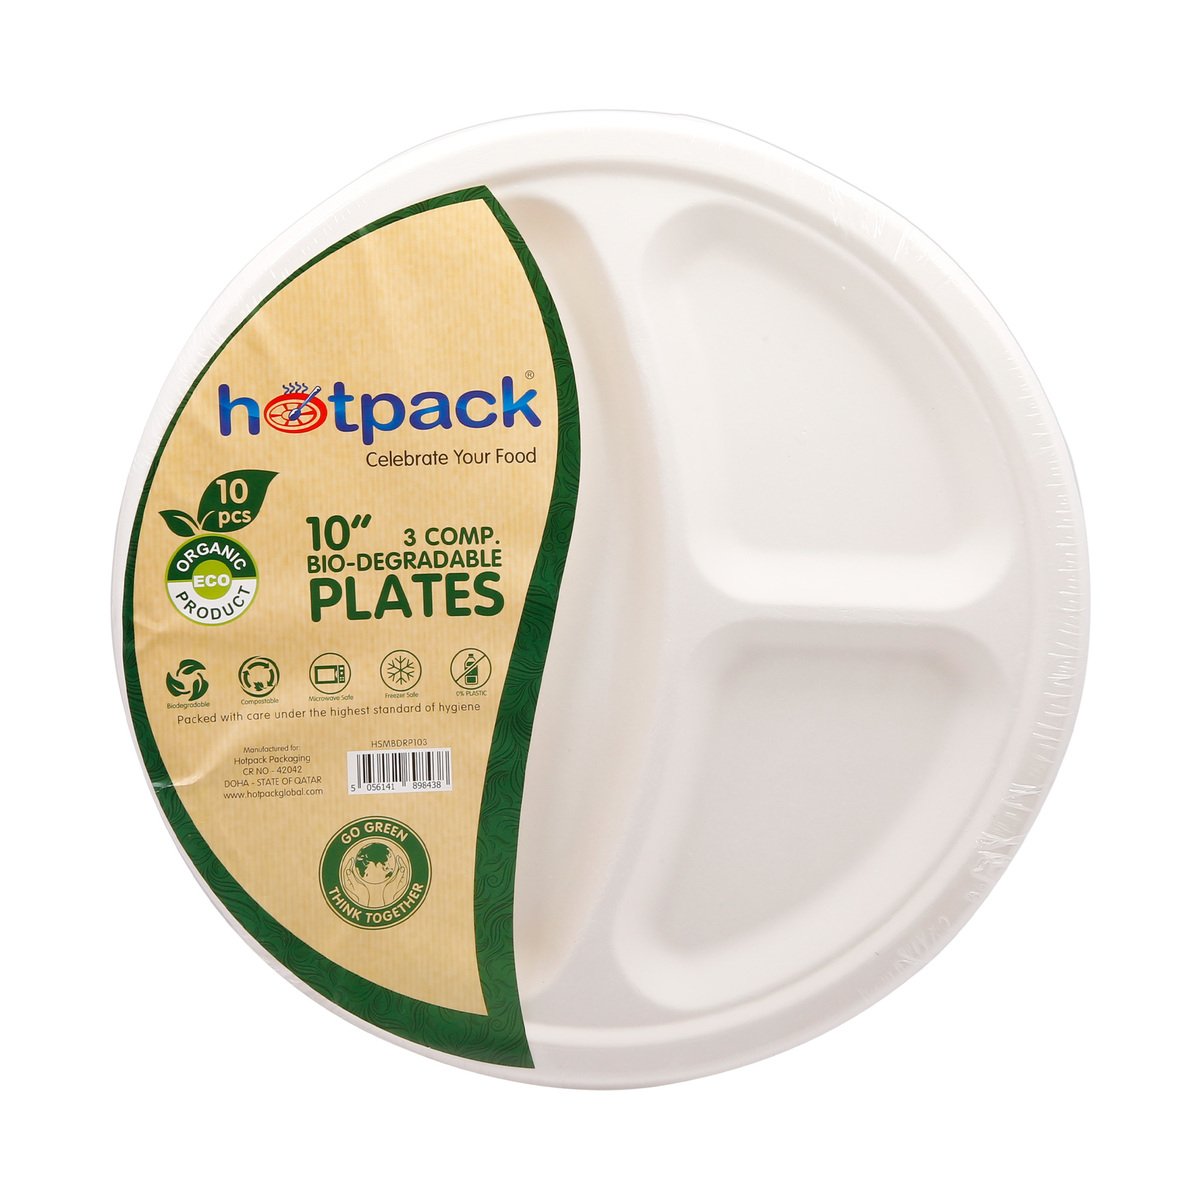 Hotpack Bio-Degradable Paper Plates 3 Comp 10" 10pcs